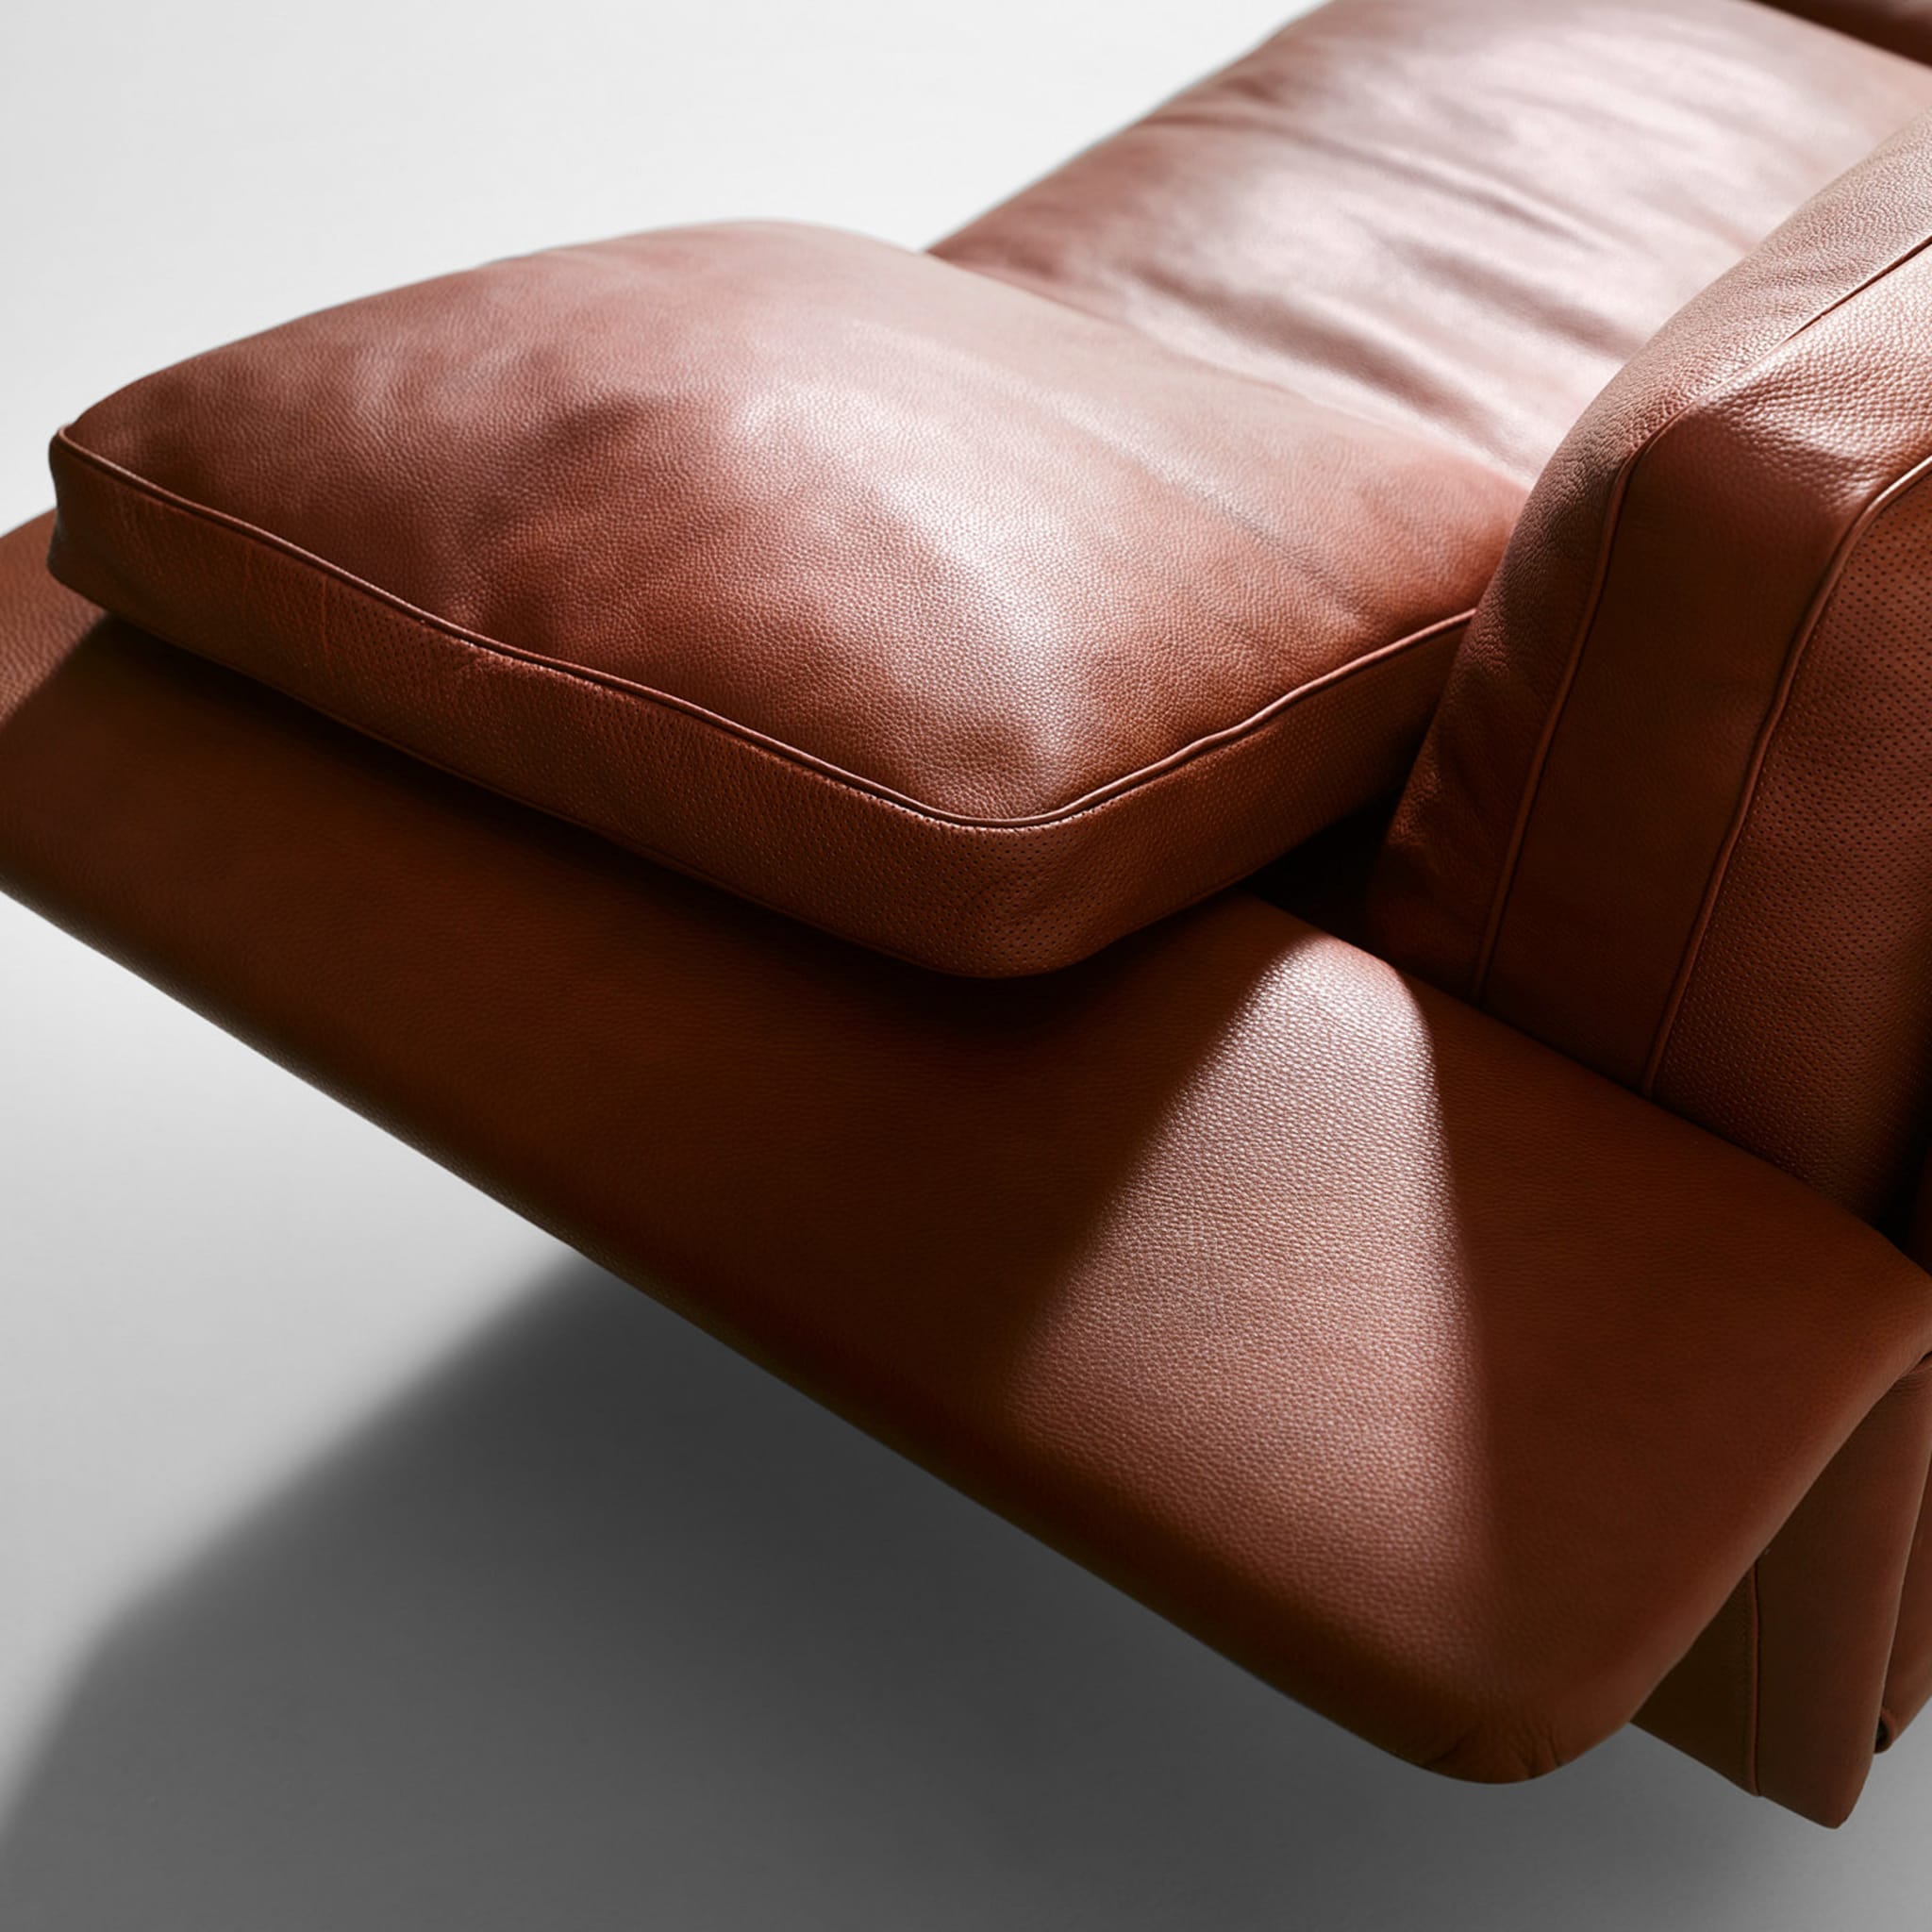 Alato Brown Leather Sofa - Alternative view 4